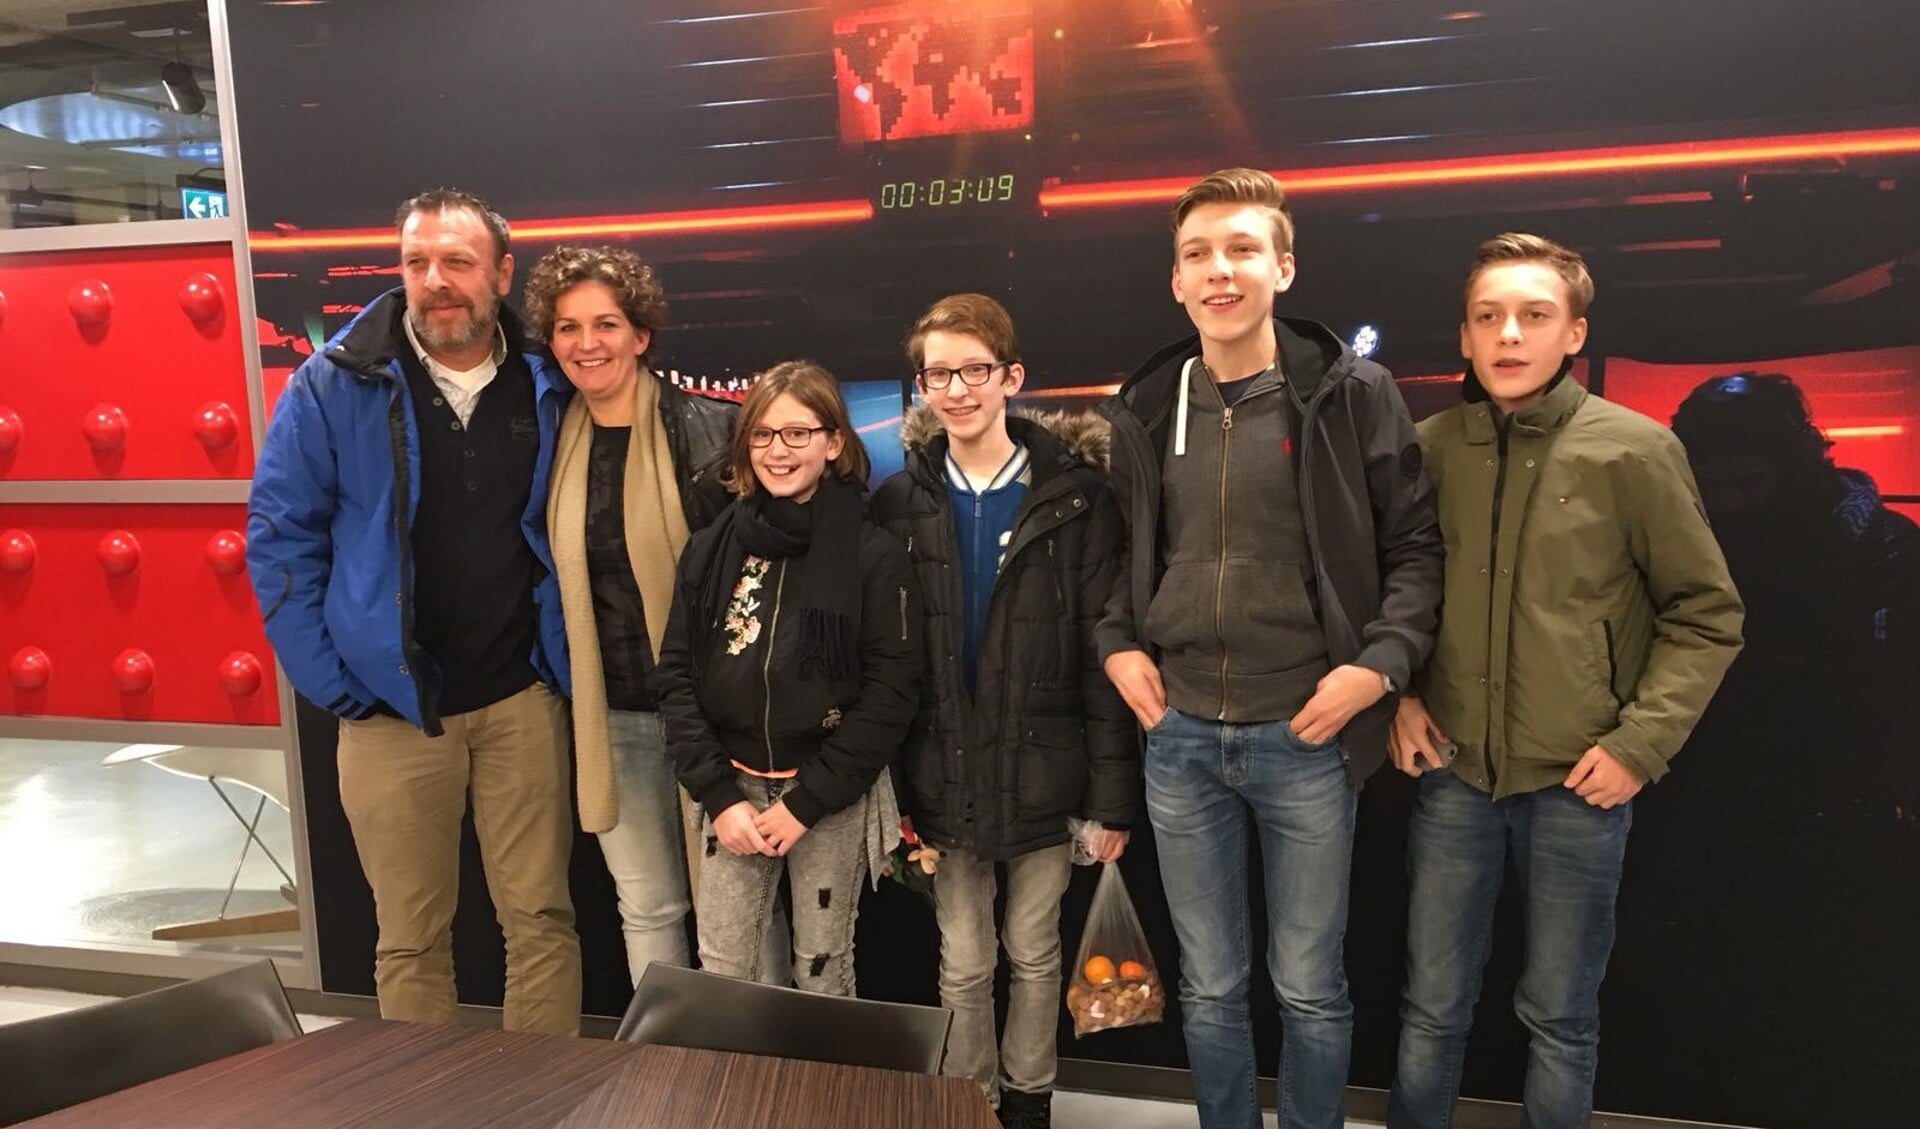 Het samengestelde gezin van Corine Verdijk (tweede van links) was zondag in Hilversum voor de preview van de Zembla-docu. 